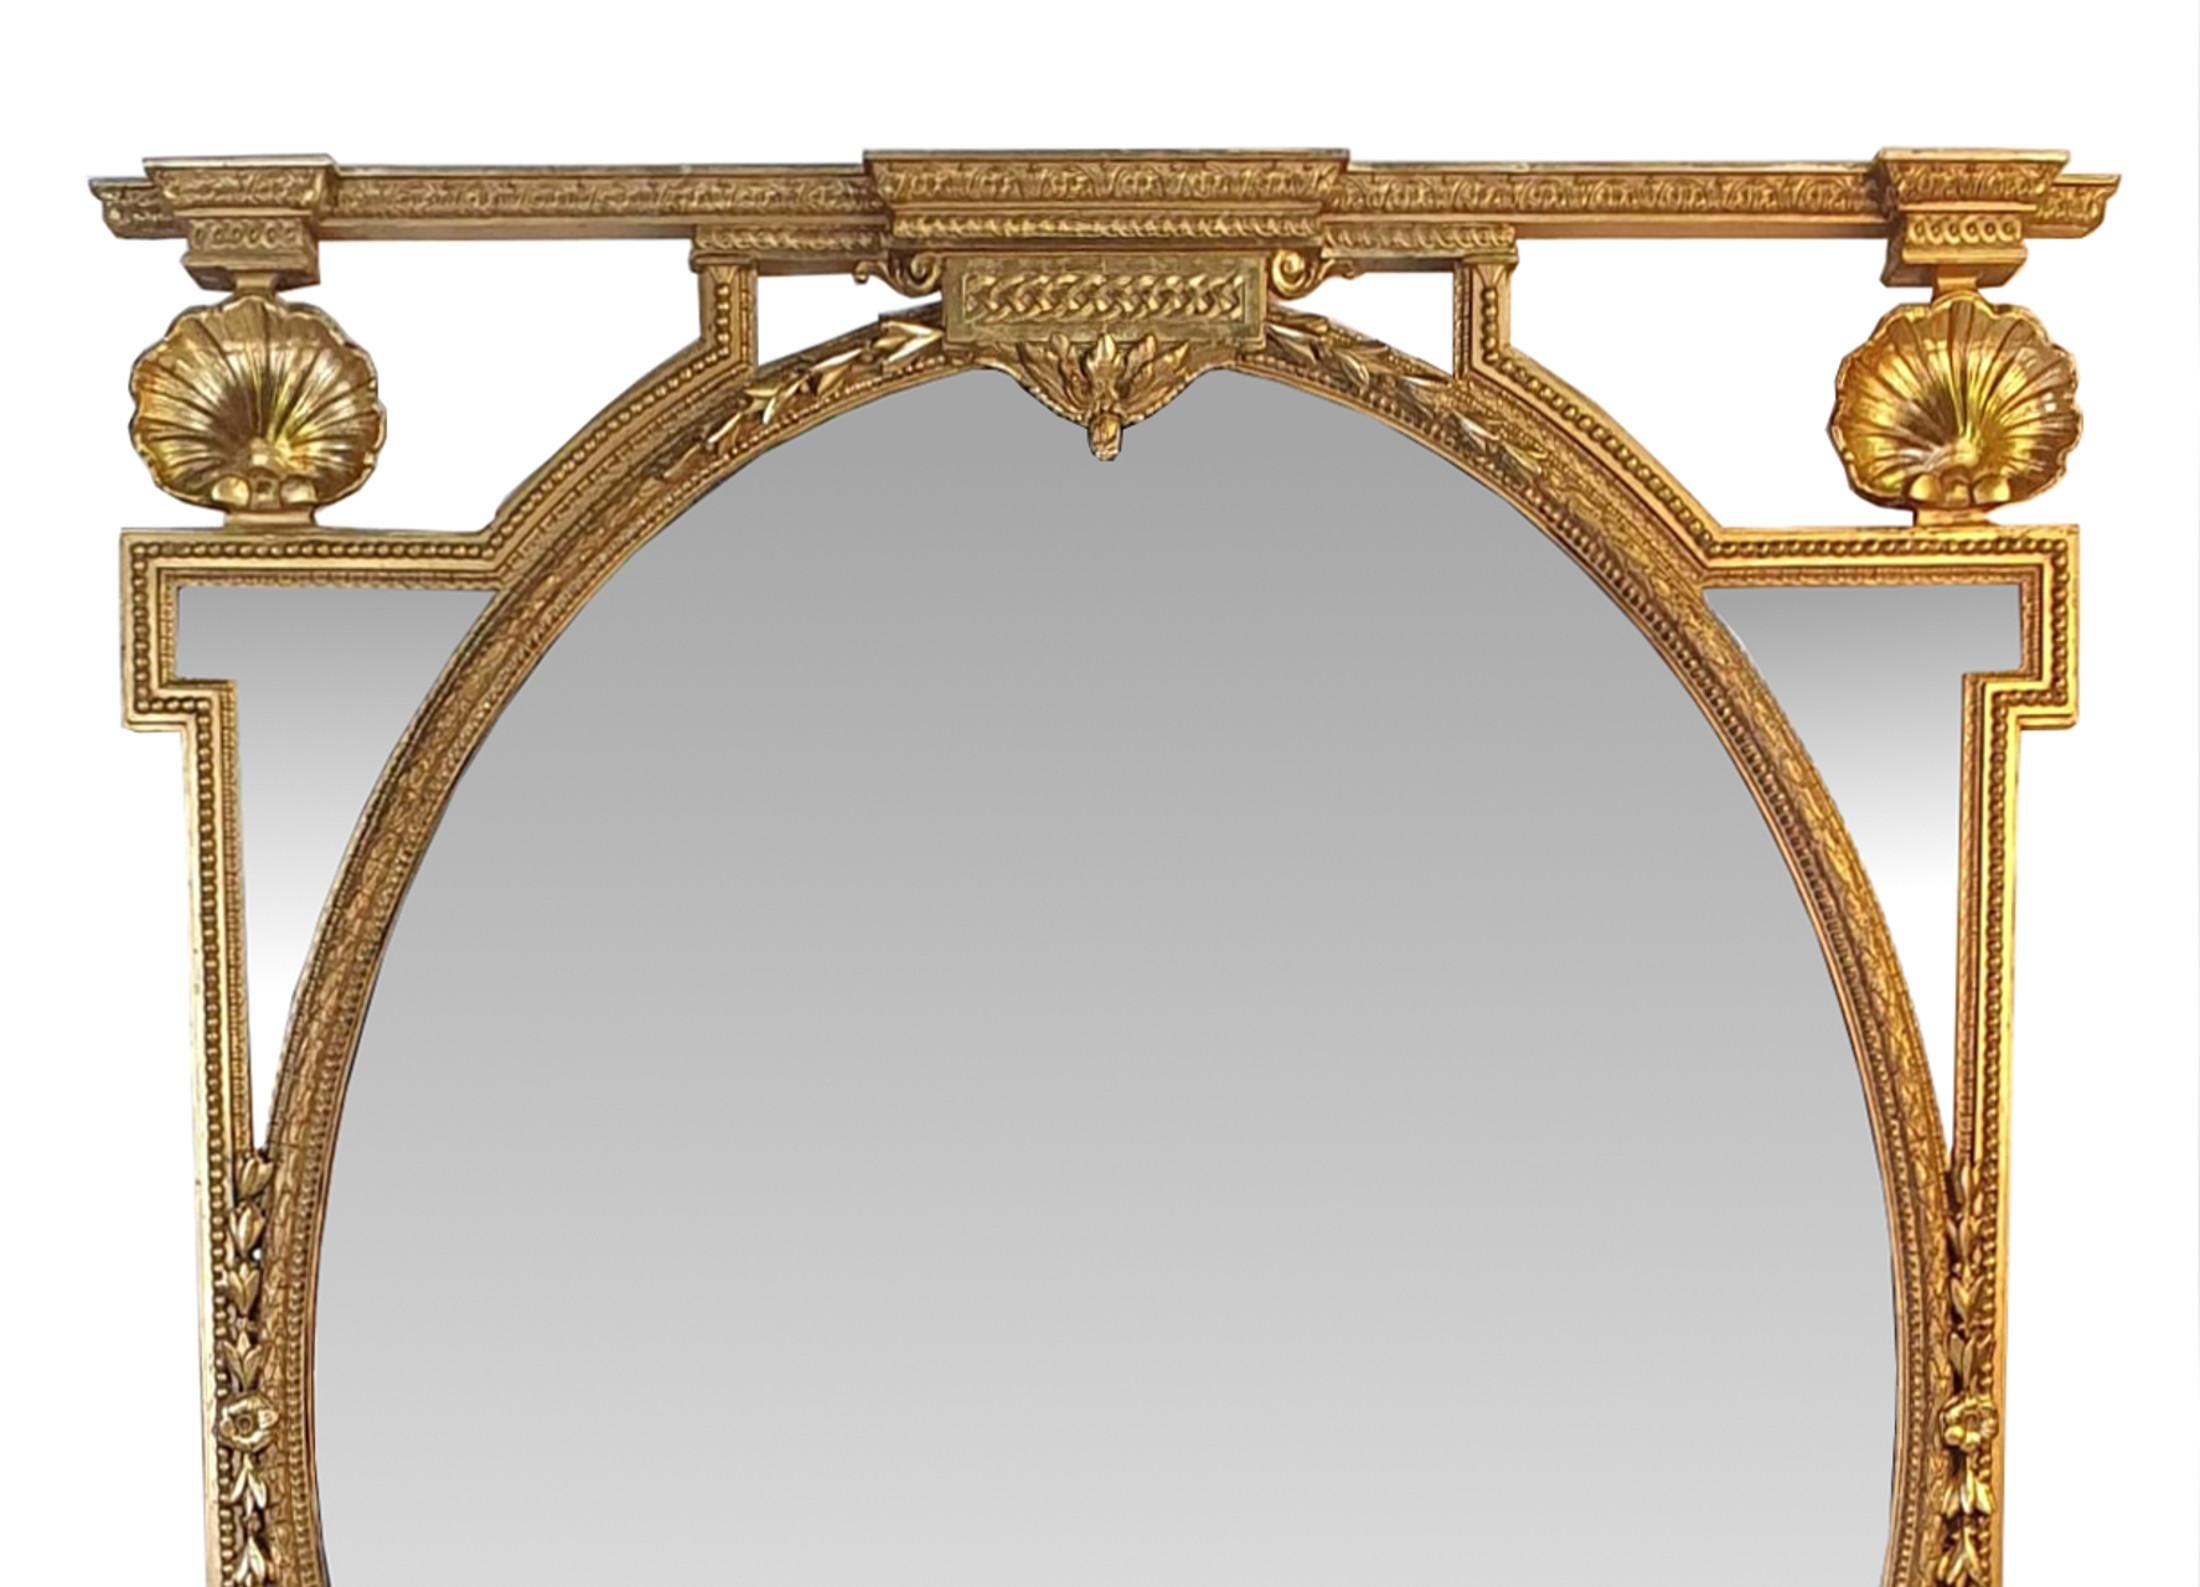 Rare grand miroir ovale en bois doré du XIXe siècle. Le cadre compartimenté en bois doré, étonnamment sculpté à la main, est orné de coquillages, de perles, de coques de cloches, de têtes de fleurs et de motifs feuillagés. 



 